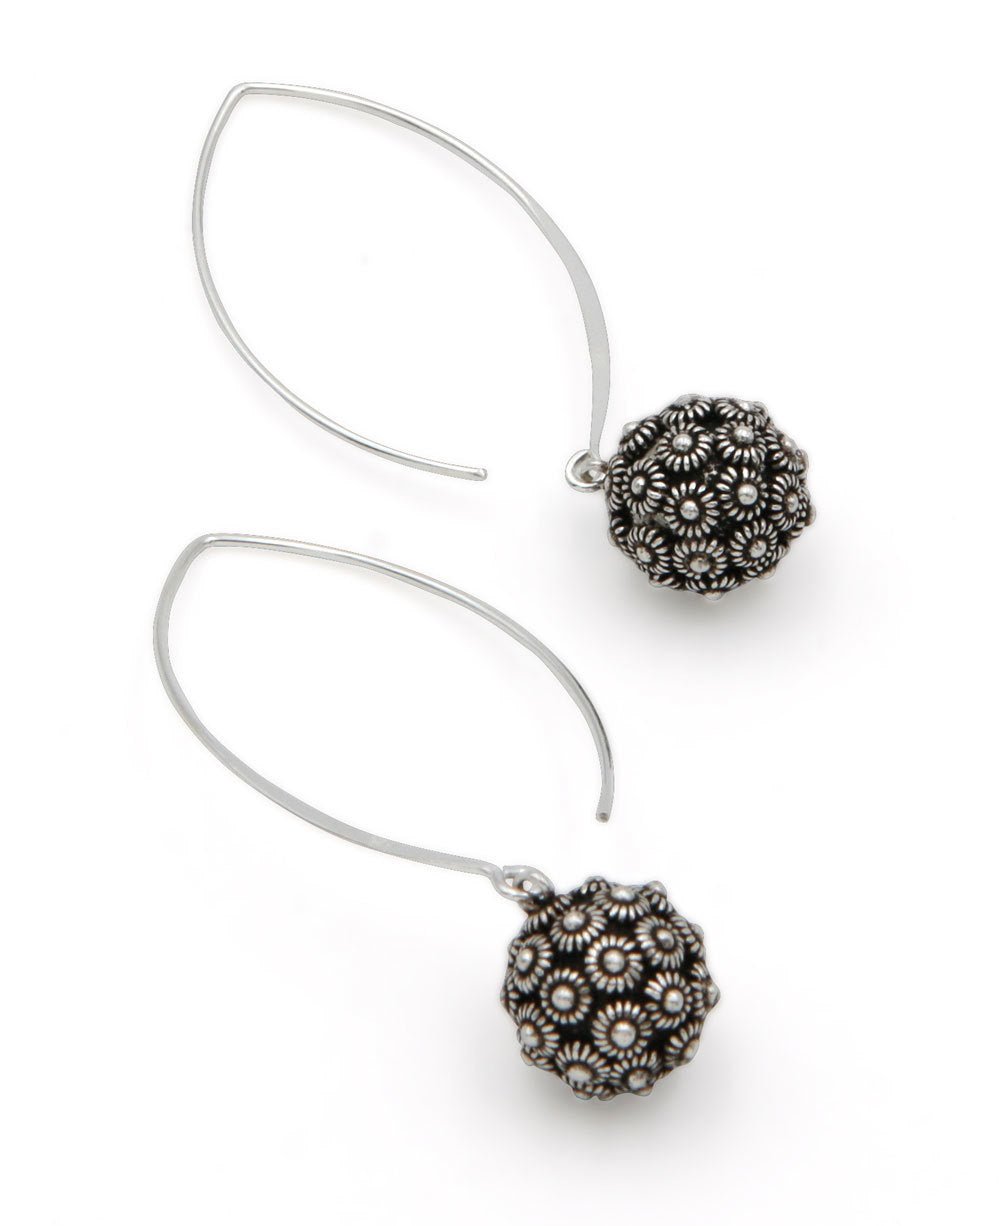 Lotus Design Threader Dangle Earrings, Hill Tribe Silver - Earrings